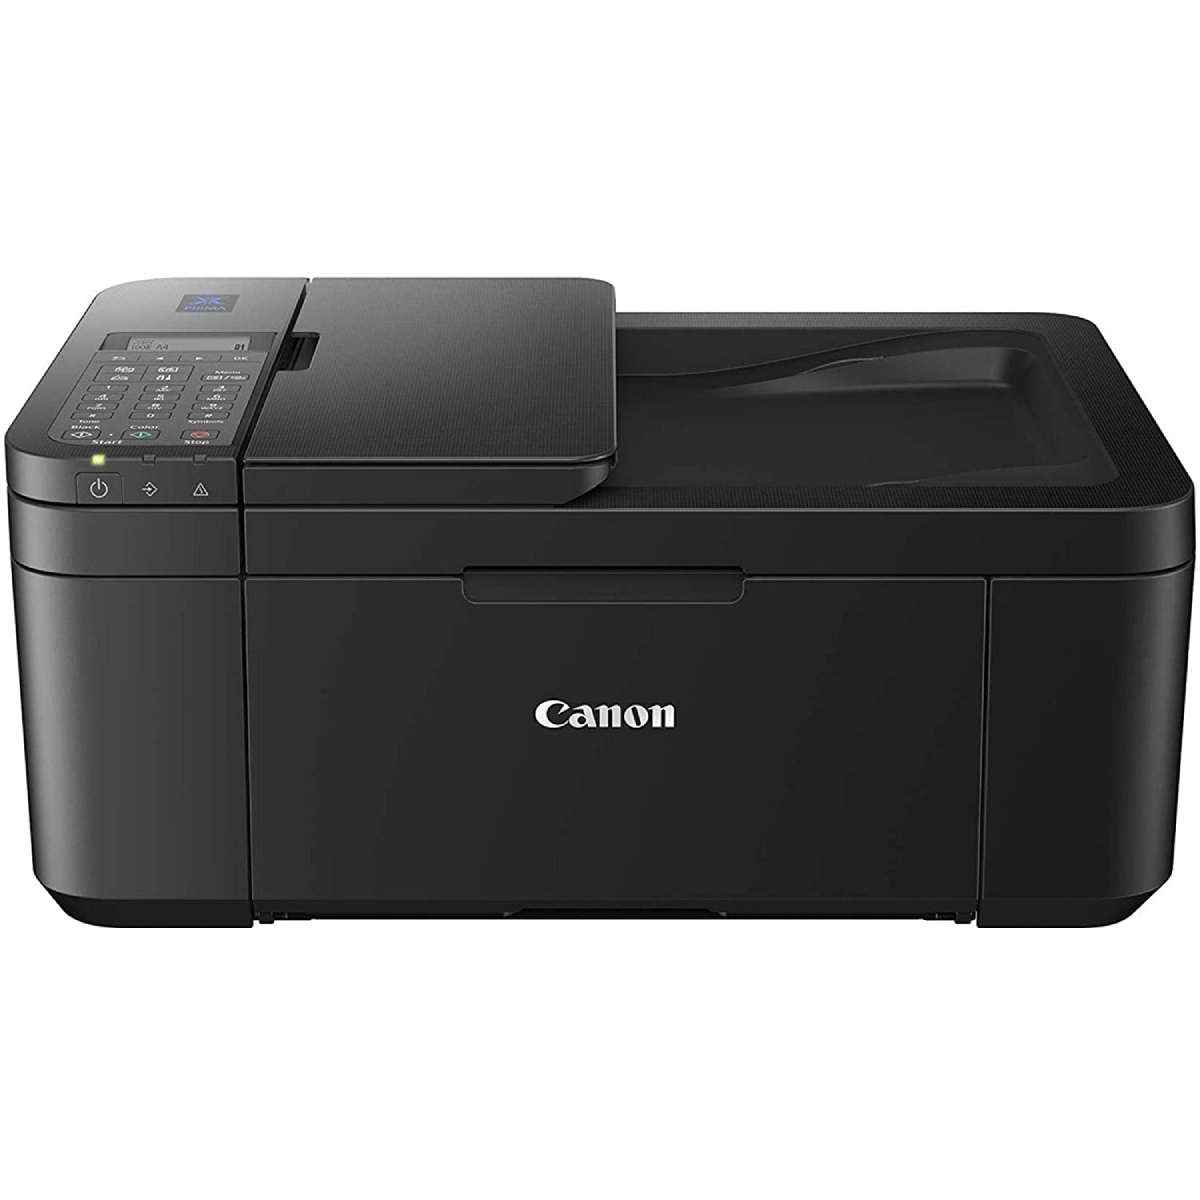 കാനോൻ E4270 All-in-One Ink Efficient WiFi Printer (E4270) 